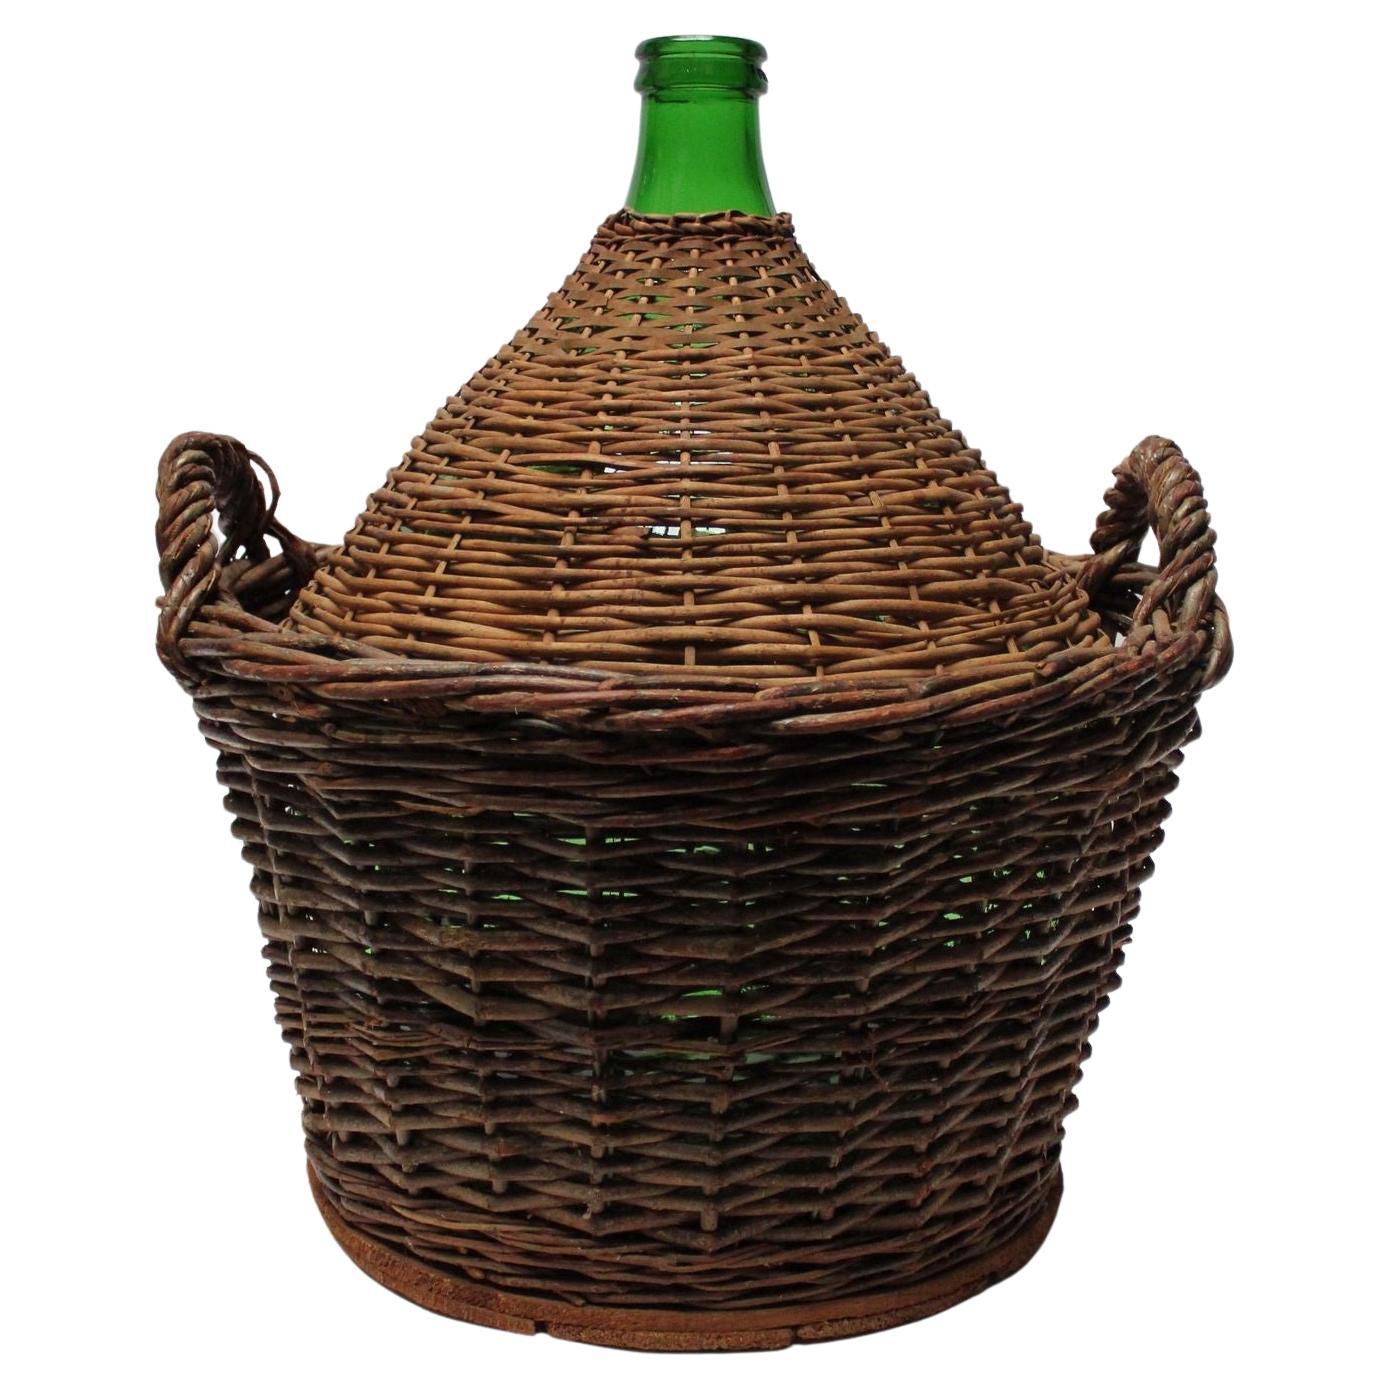 Vintage Italian Green Glass Demijohn by Villani with Wicker Basket